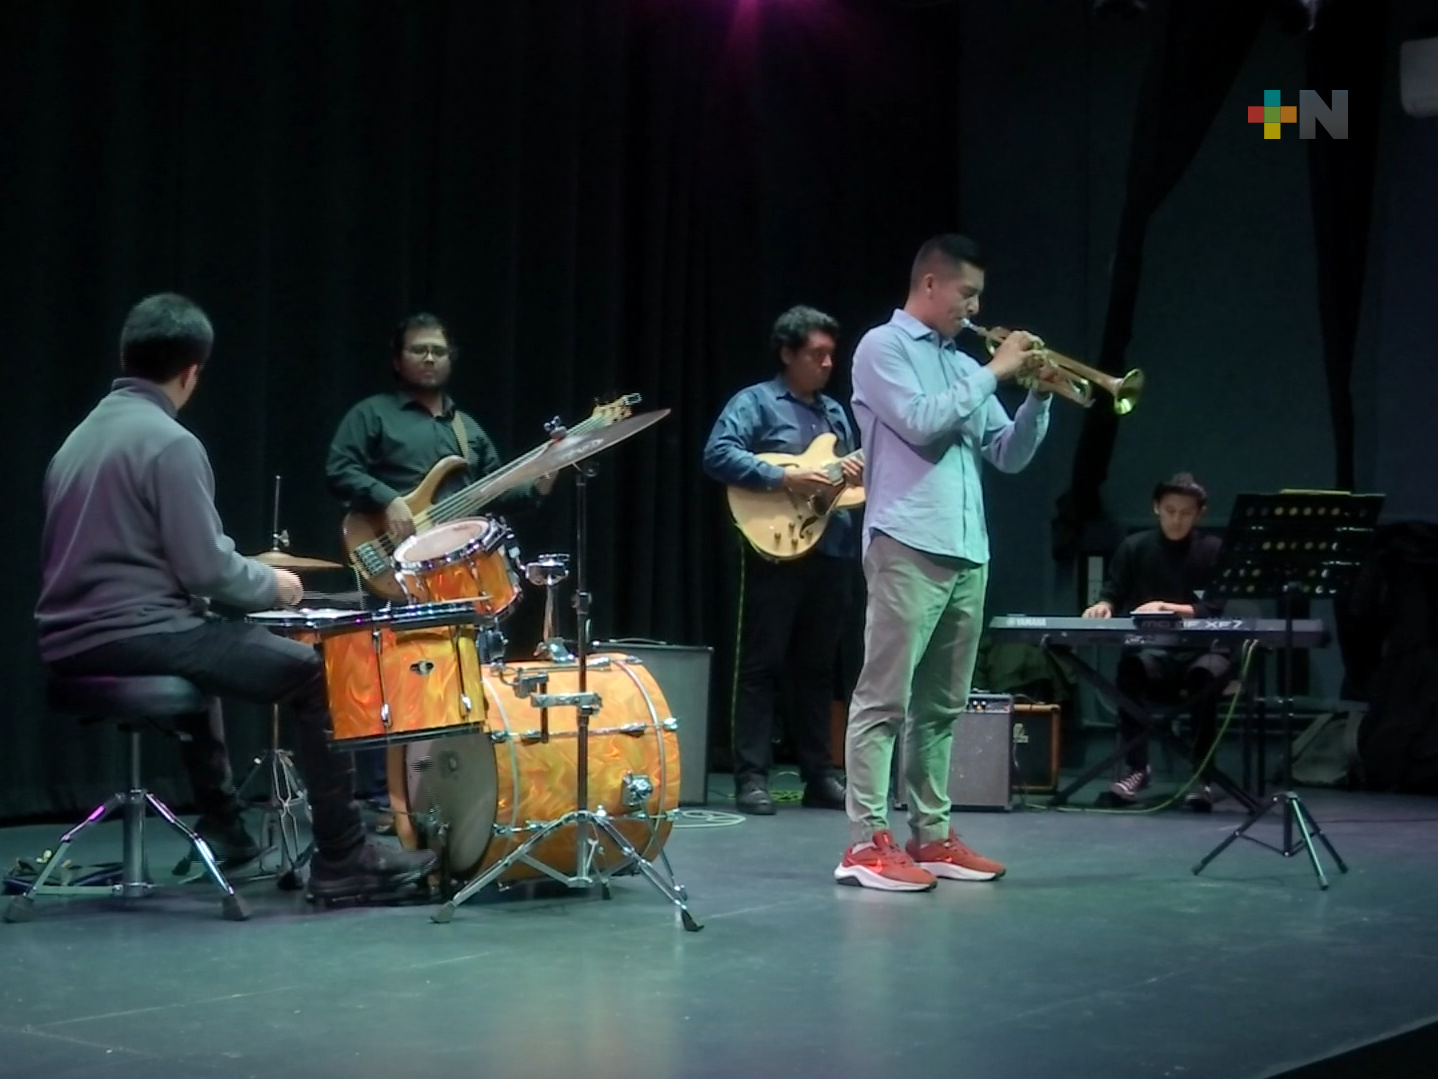 Se presentó concierto “Uno que otro estilo de jazz” con el cuarteto de Carlos Barreto